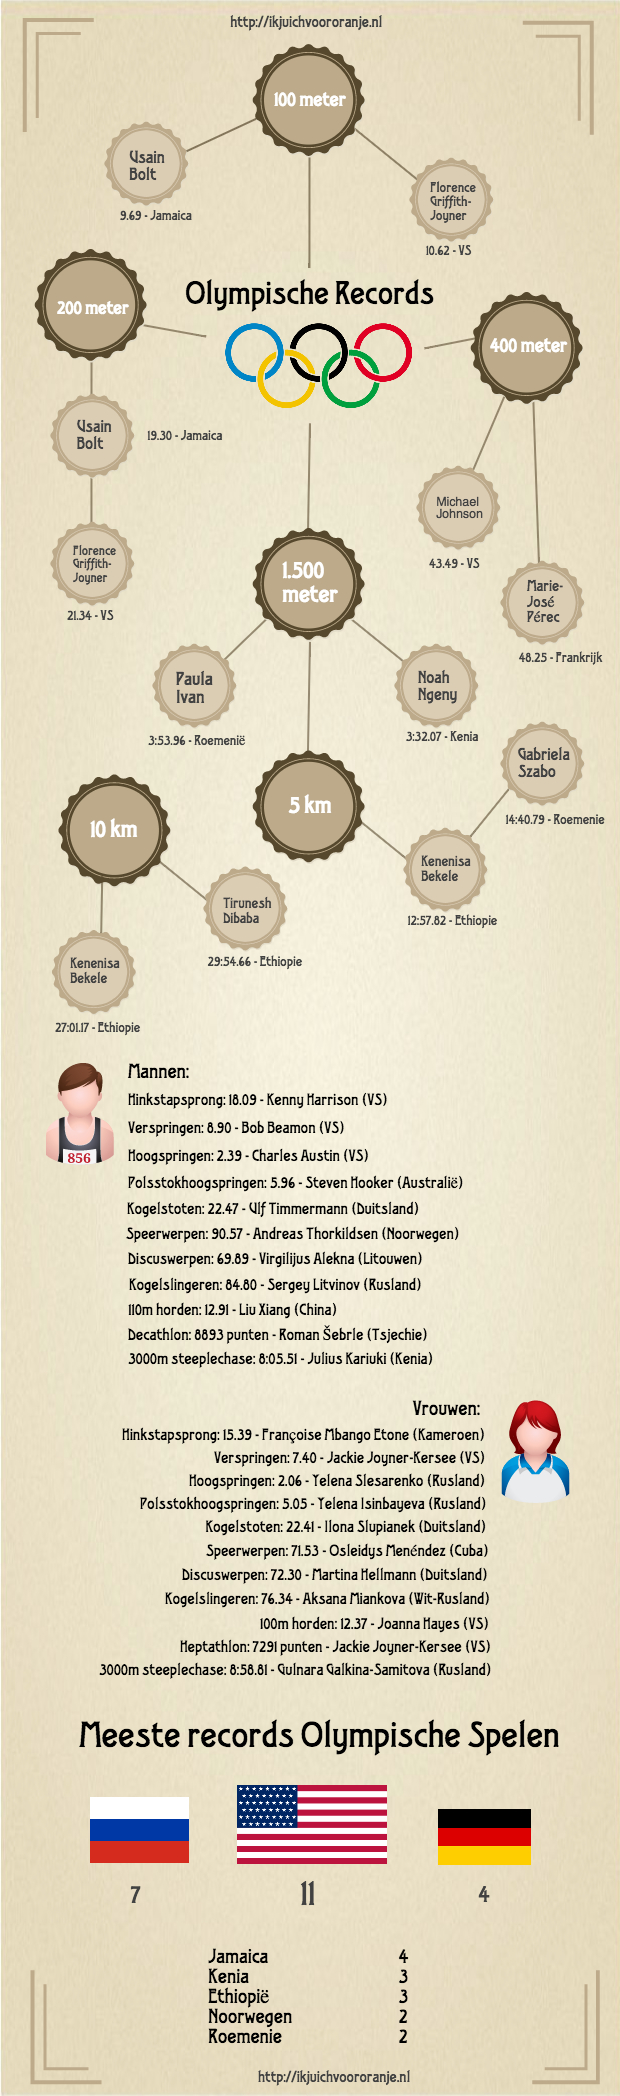 Infographic Olympische Spelen records in atletiek